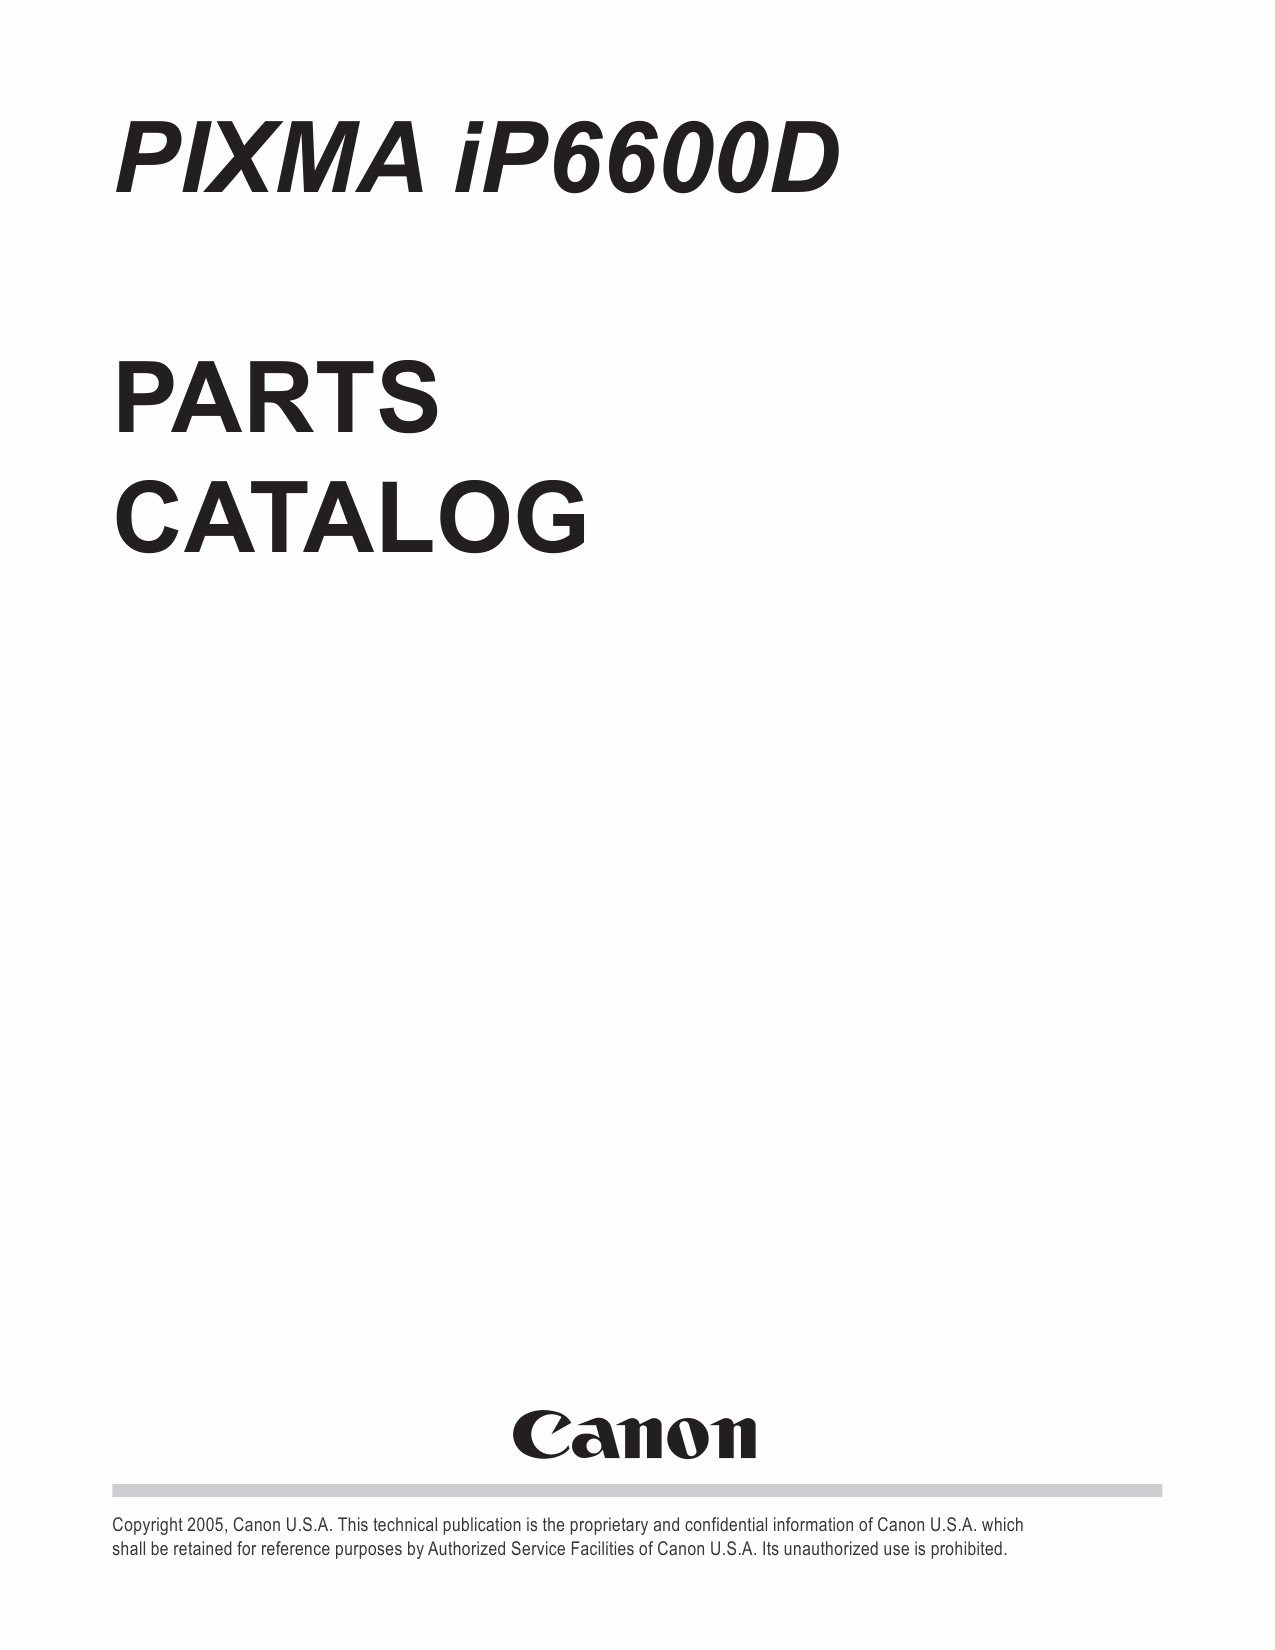 Canon PIXMA iP6600D Parts Catalog-1